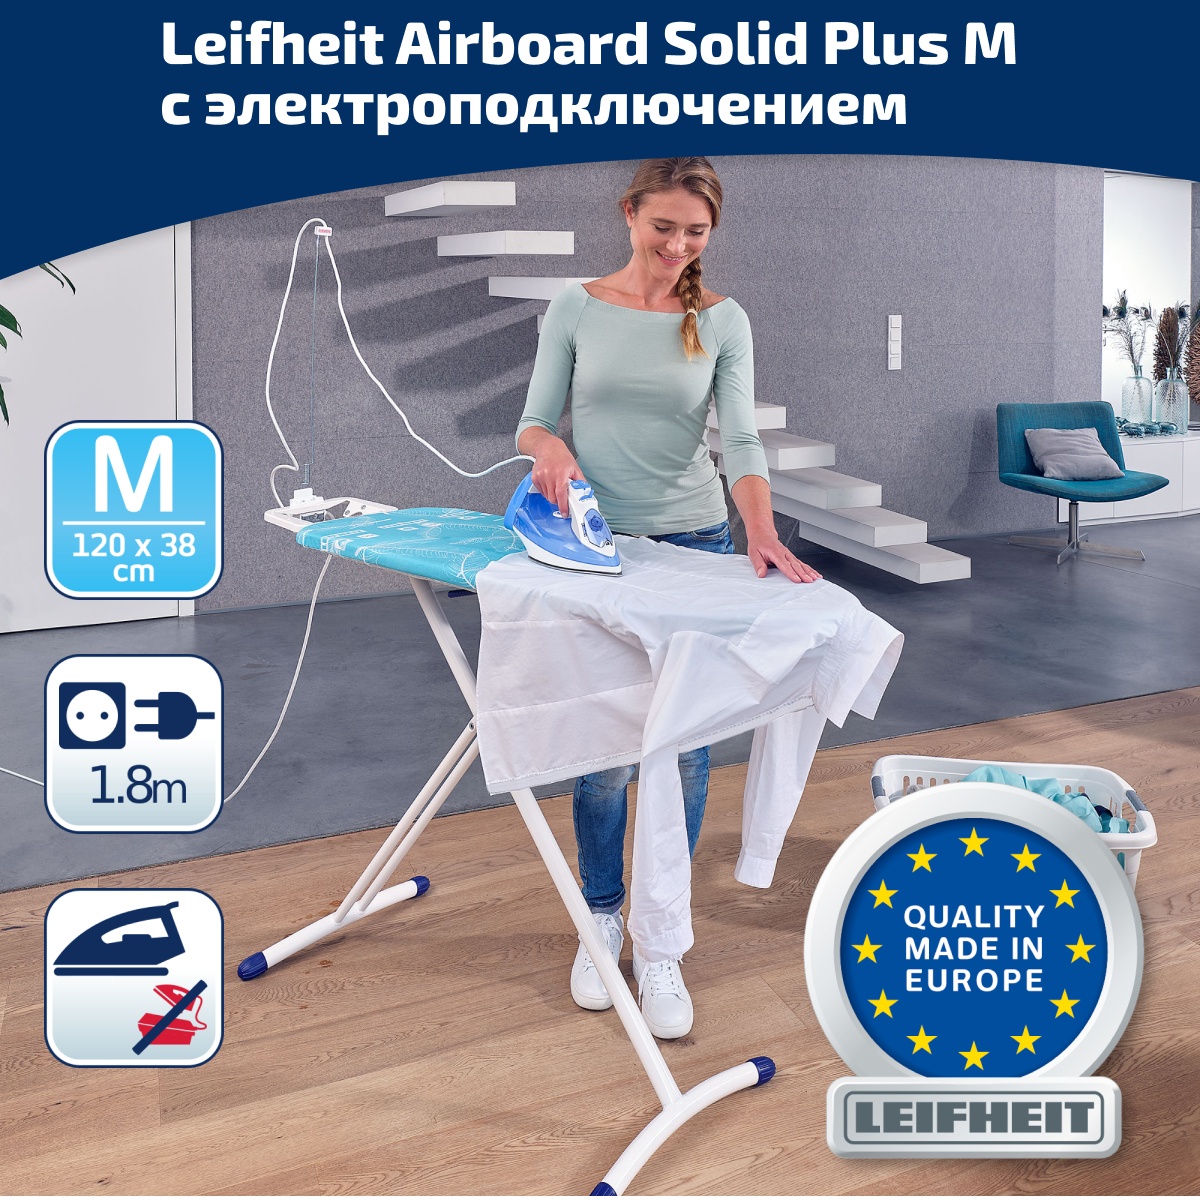 Гладильная доска с электроподключением Leifheit Airboard Solid Plus M 120х38см гладильная доска leifheit airboard compact m без электроподключения